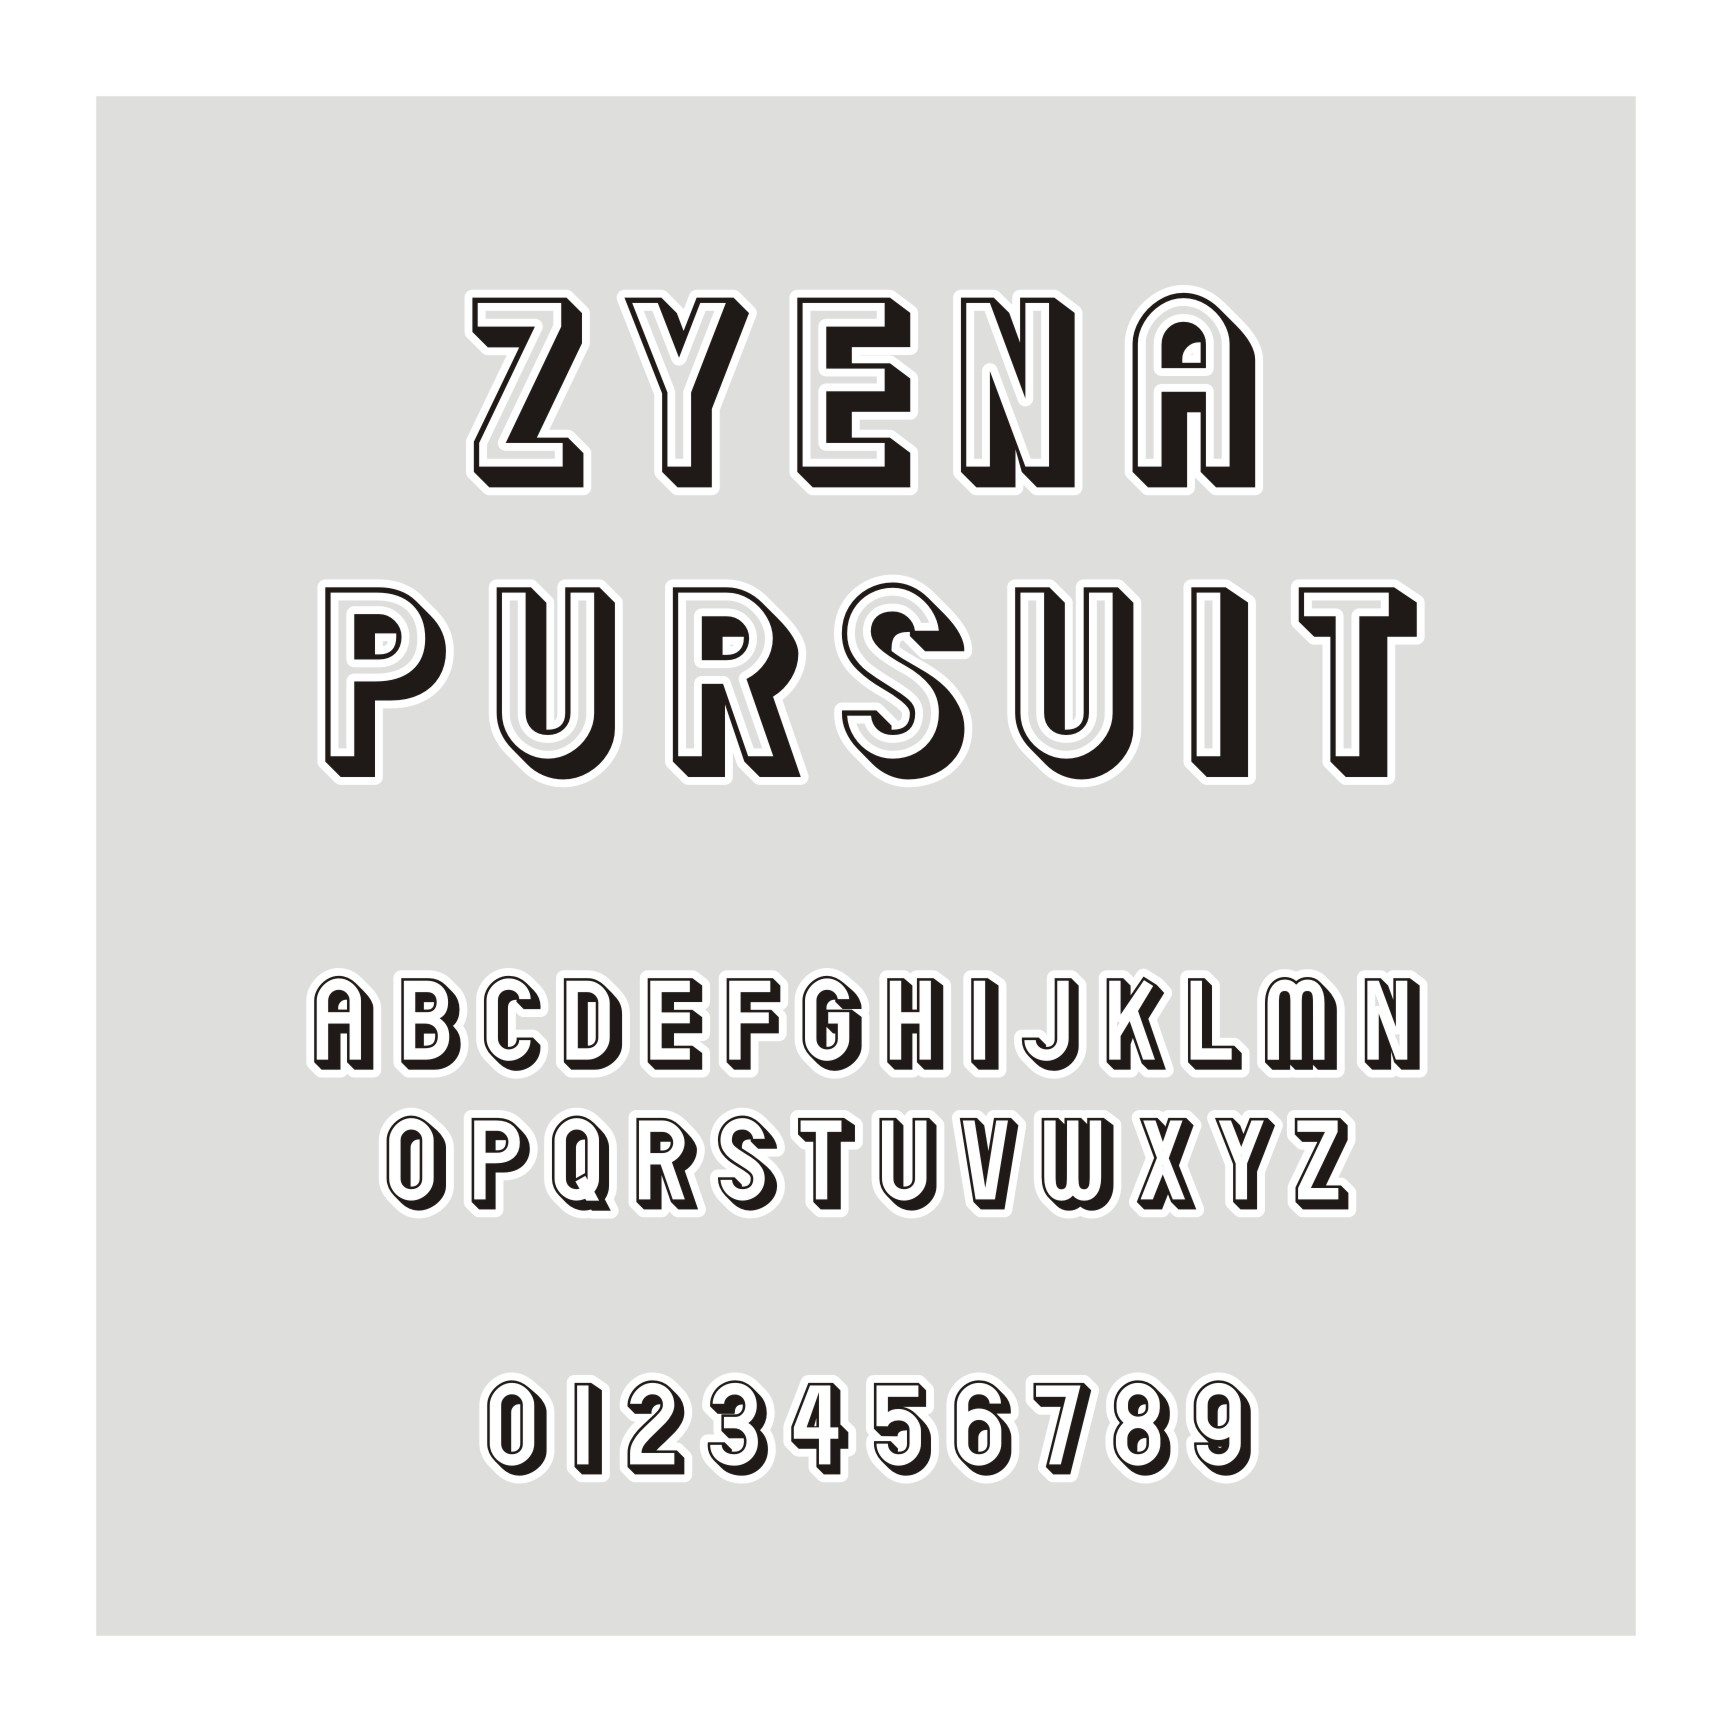 ZYENA Pursuit